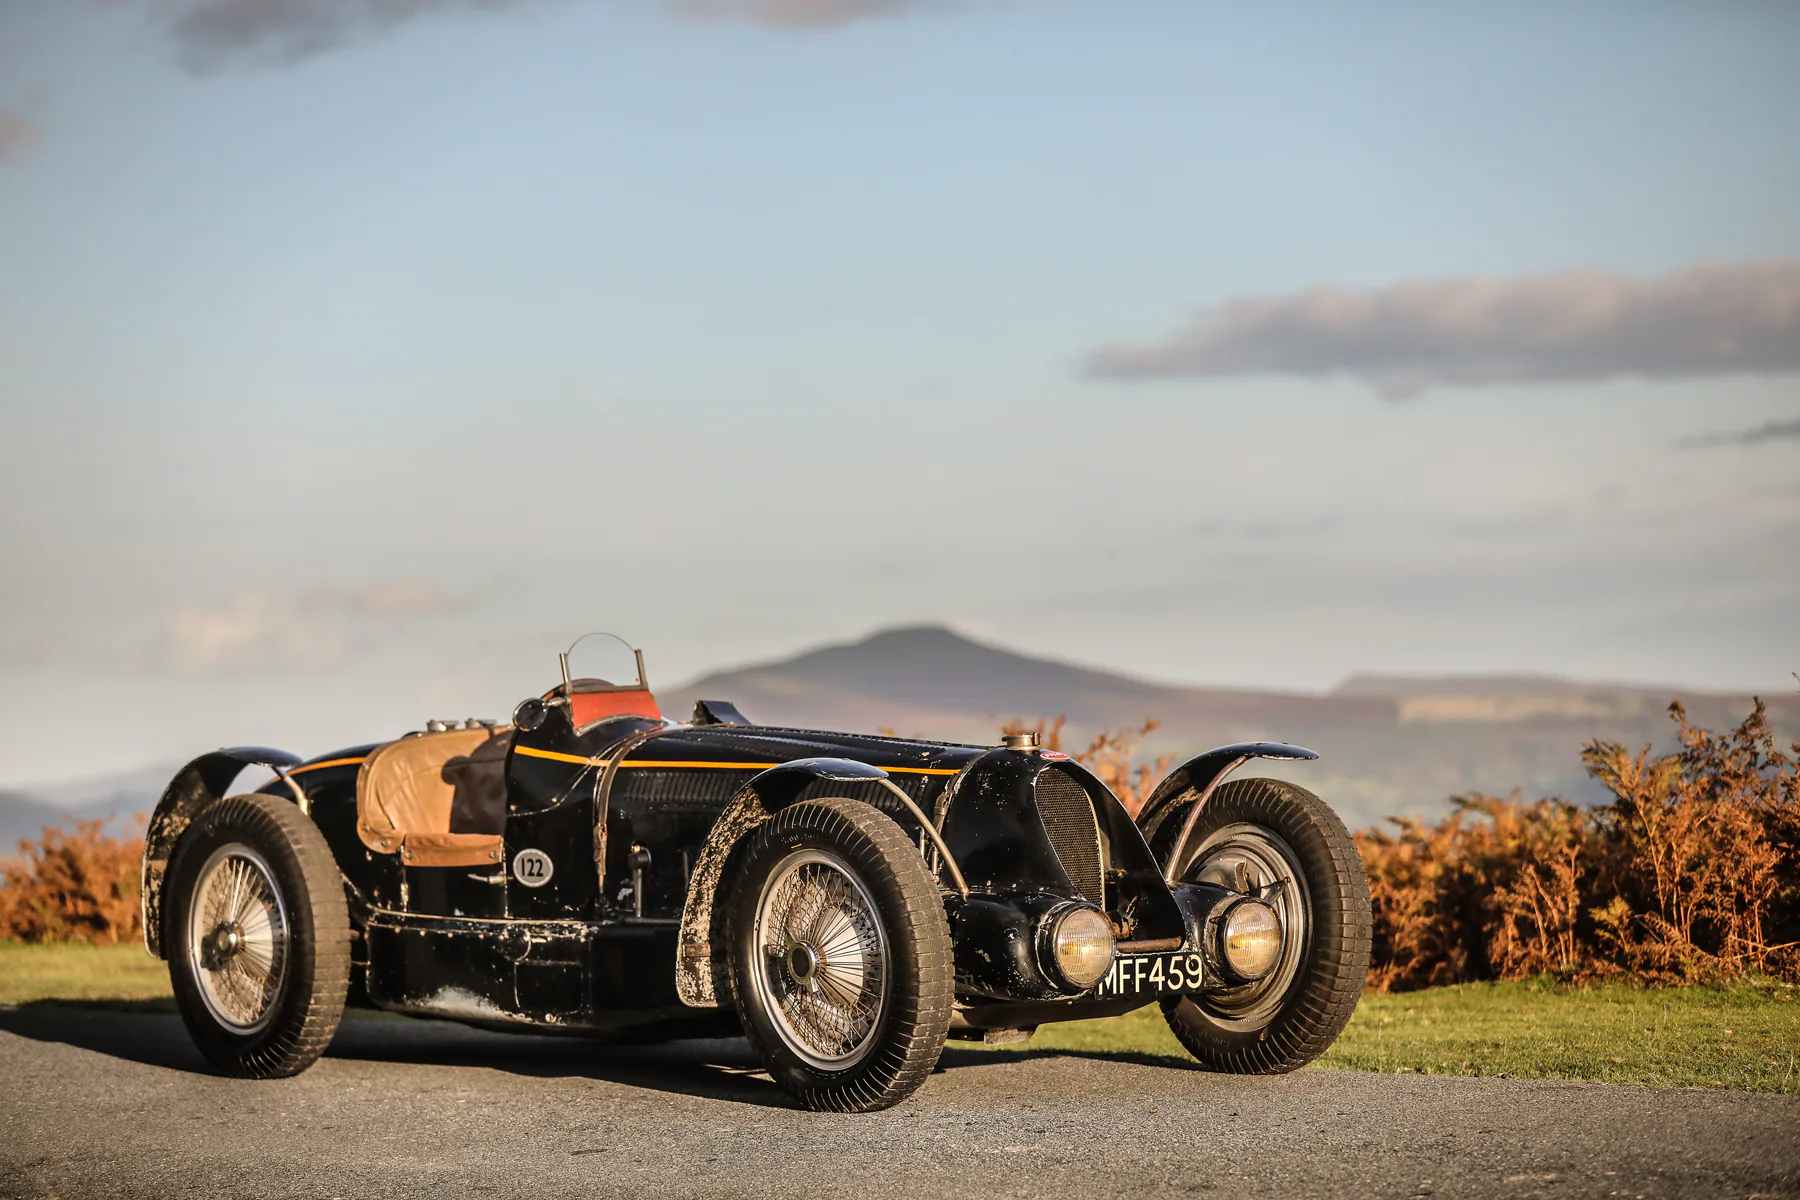 Bugatti Type 59 Sports (chasis 57248). Un Bugatti Type 59 Sports de 1934 con el número de chasis 57248 fue subastado por USD 12,681 millones en Gooding &amp; Company en Londres en septiembre de 2020. Esto lo convierte en uno de los Bugattis más caros que jamás se haya subastado en una subasta pública. El Bugatti Type 59 Sports fue creado como un coche de carreras para el equipo de fábrica Bugatti Grand Prix y ganó el Gran Premio de Bélgica en Spa, y luego terminó tercero en el Gran Premio de Mónaco. Algunos de los pilotos de carreras de Bugatti más famosos y exitosos estaban al volante de este automóvil, incluidos Robert Benoist, Louis Chiron, René Dreyfus, Achille Varzi y Jean-Pierre Wimille. Después de la exitosa temporada de carreras, Bugatti convirtió el Type 59 en un automóvil deportivo. El rey Leopoldo de Bélgica lo compró en 1937. El vehículo permanece en su estado original, sin restaurar hasta el día de hoy. Está propulsado por un motor de 8 cilindros en línea con una capacidad de 3,3 litros y un sobrealimentador. La potencia de salida fue de alrededor de 250 PS; otras variantes de motor alcanzaron hasta 380 CV en el Tipo 59, que se fabricó hasta 1936.